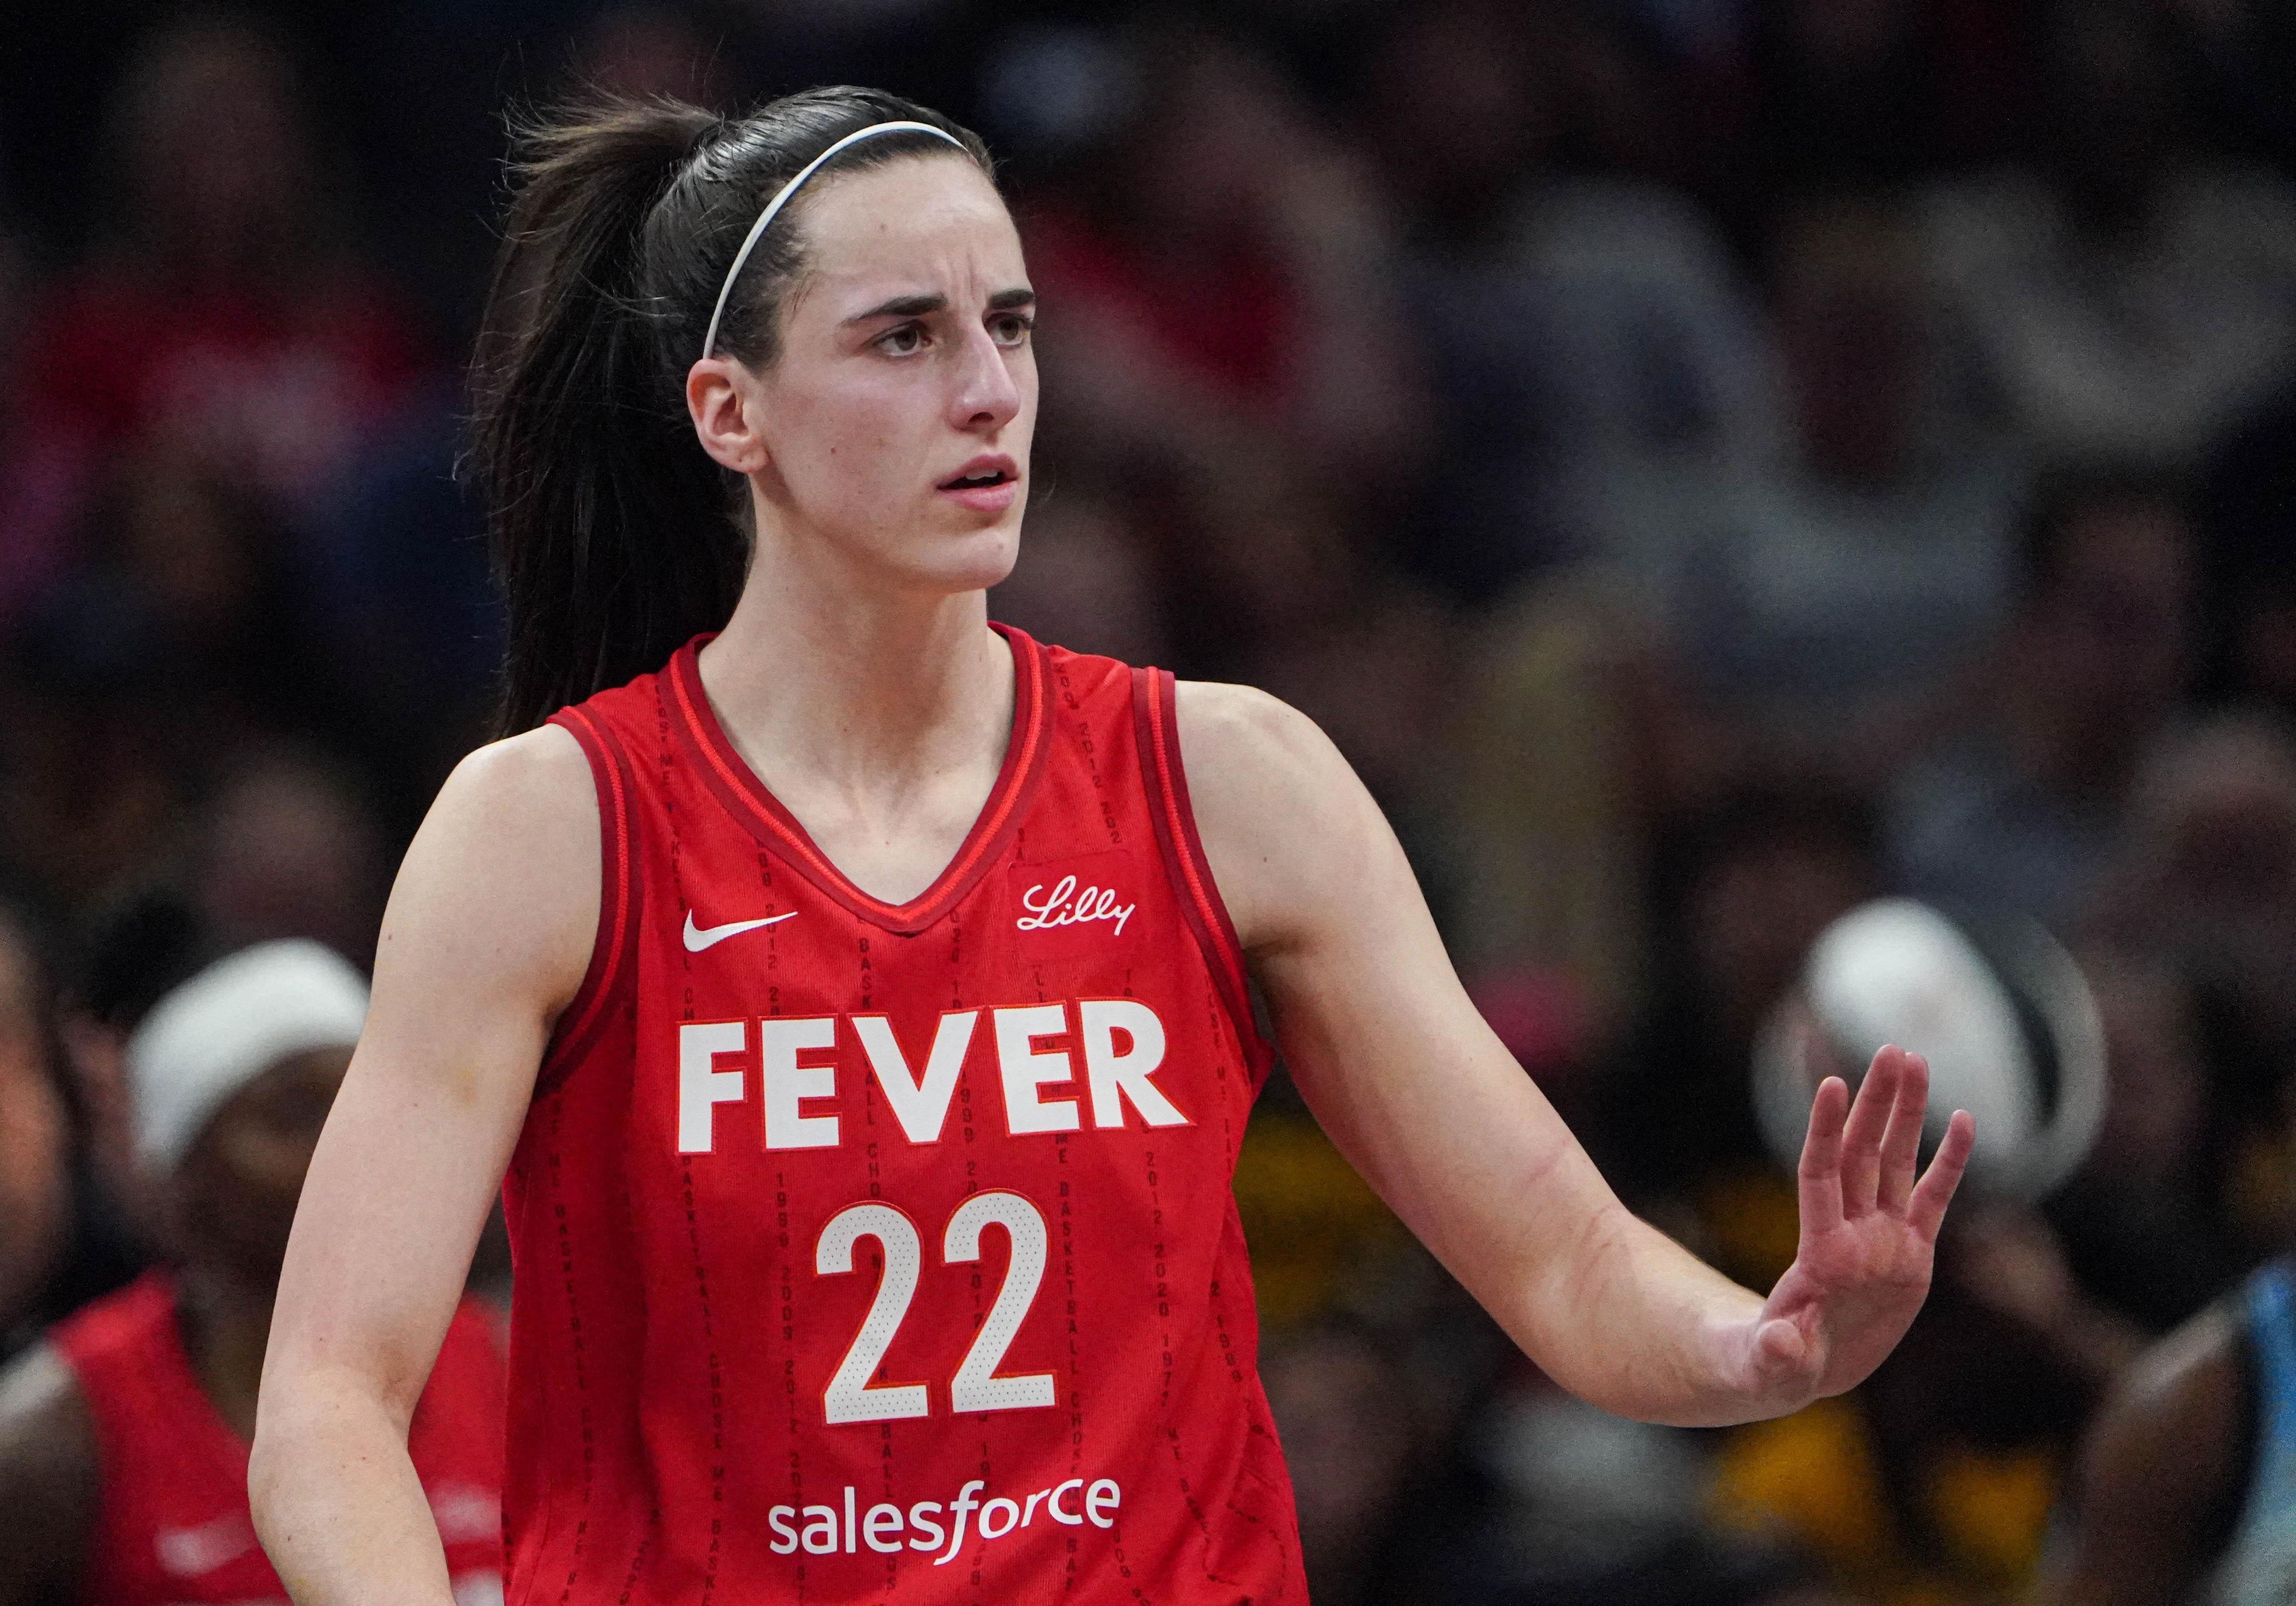 Le Fever alerte la WNBA sur le traitement réservé à Caitlin Clark | beIN  SPORTS